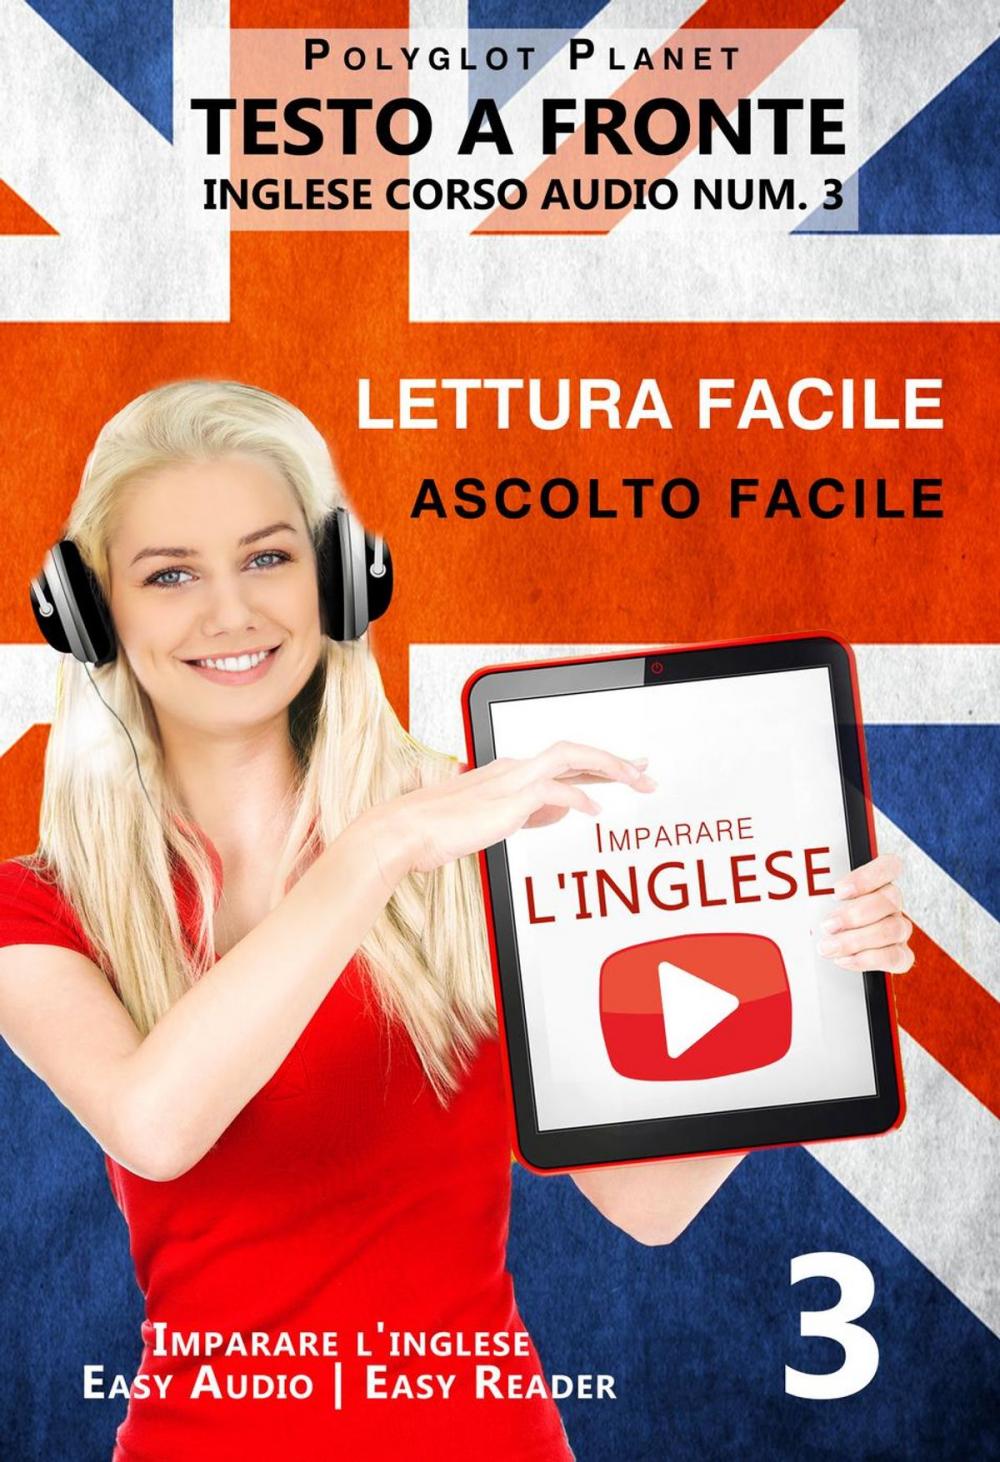 Big bigCover of Imparare l'inglese - Lettura facile | Ascolto facile | Testo a fronte - Inglese corso audio num. 3